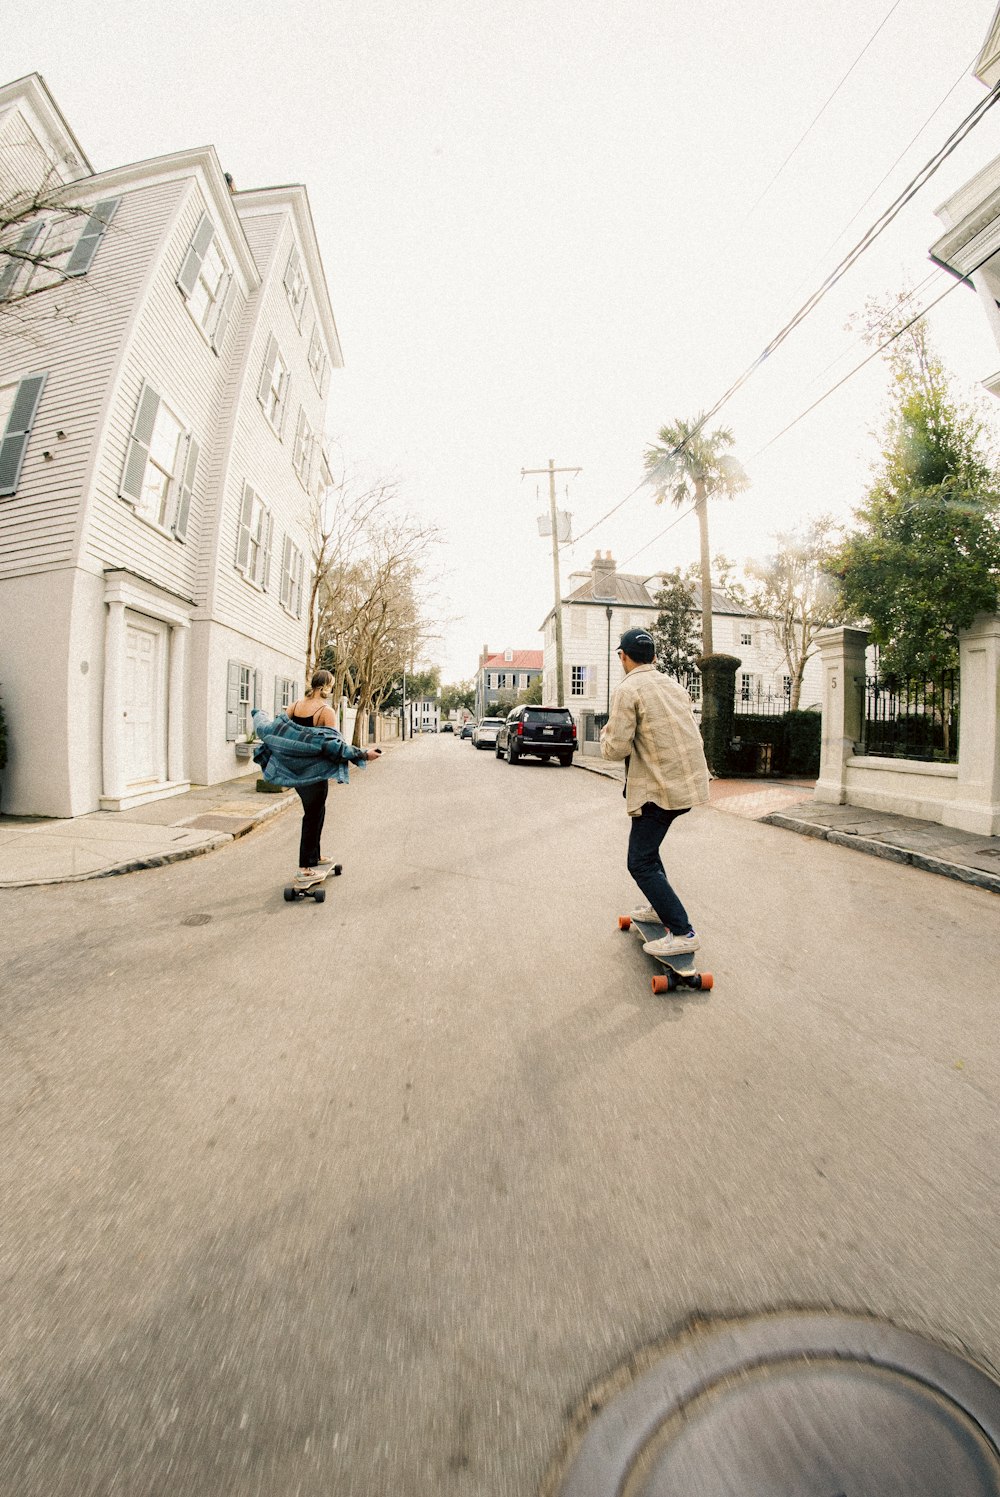 스케이트보드를 타고 거리를 걷고 있는 두 사람